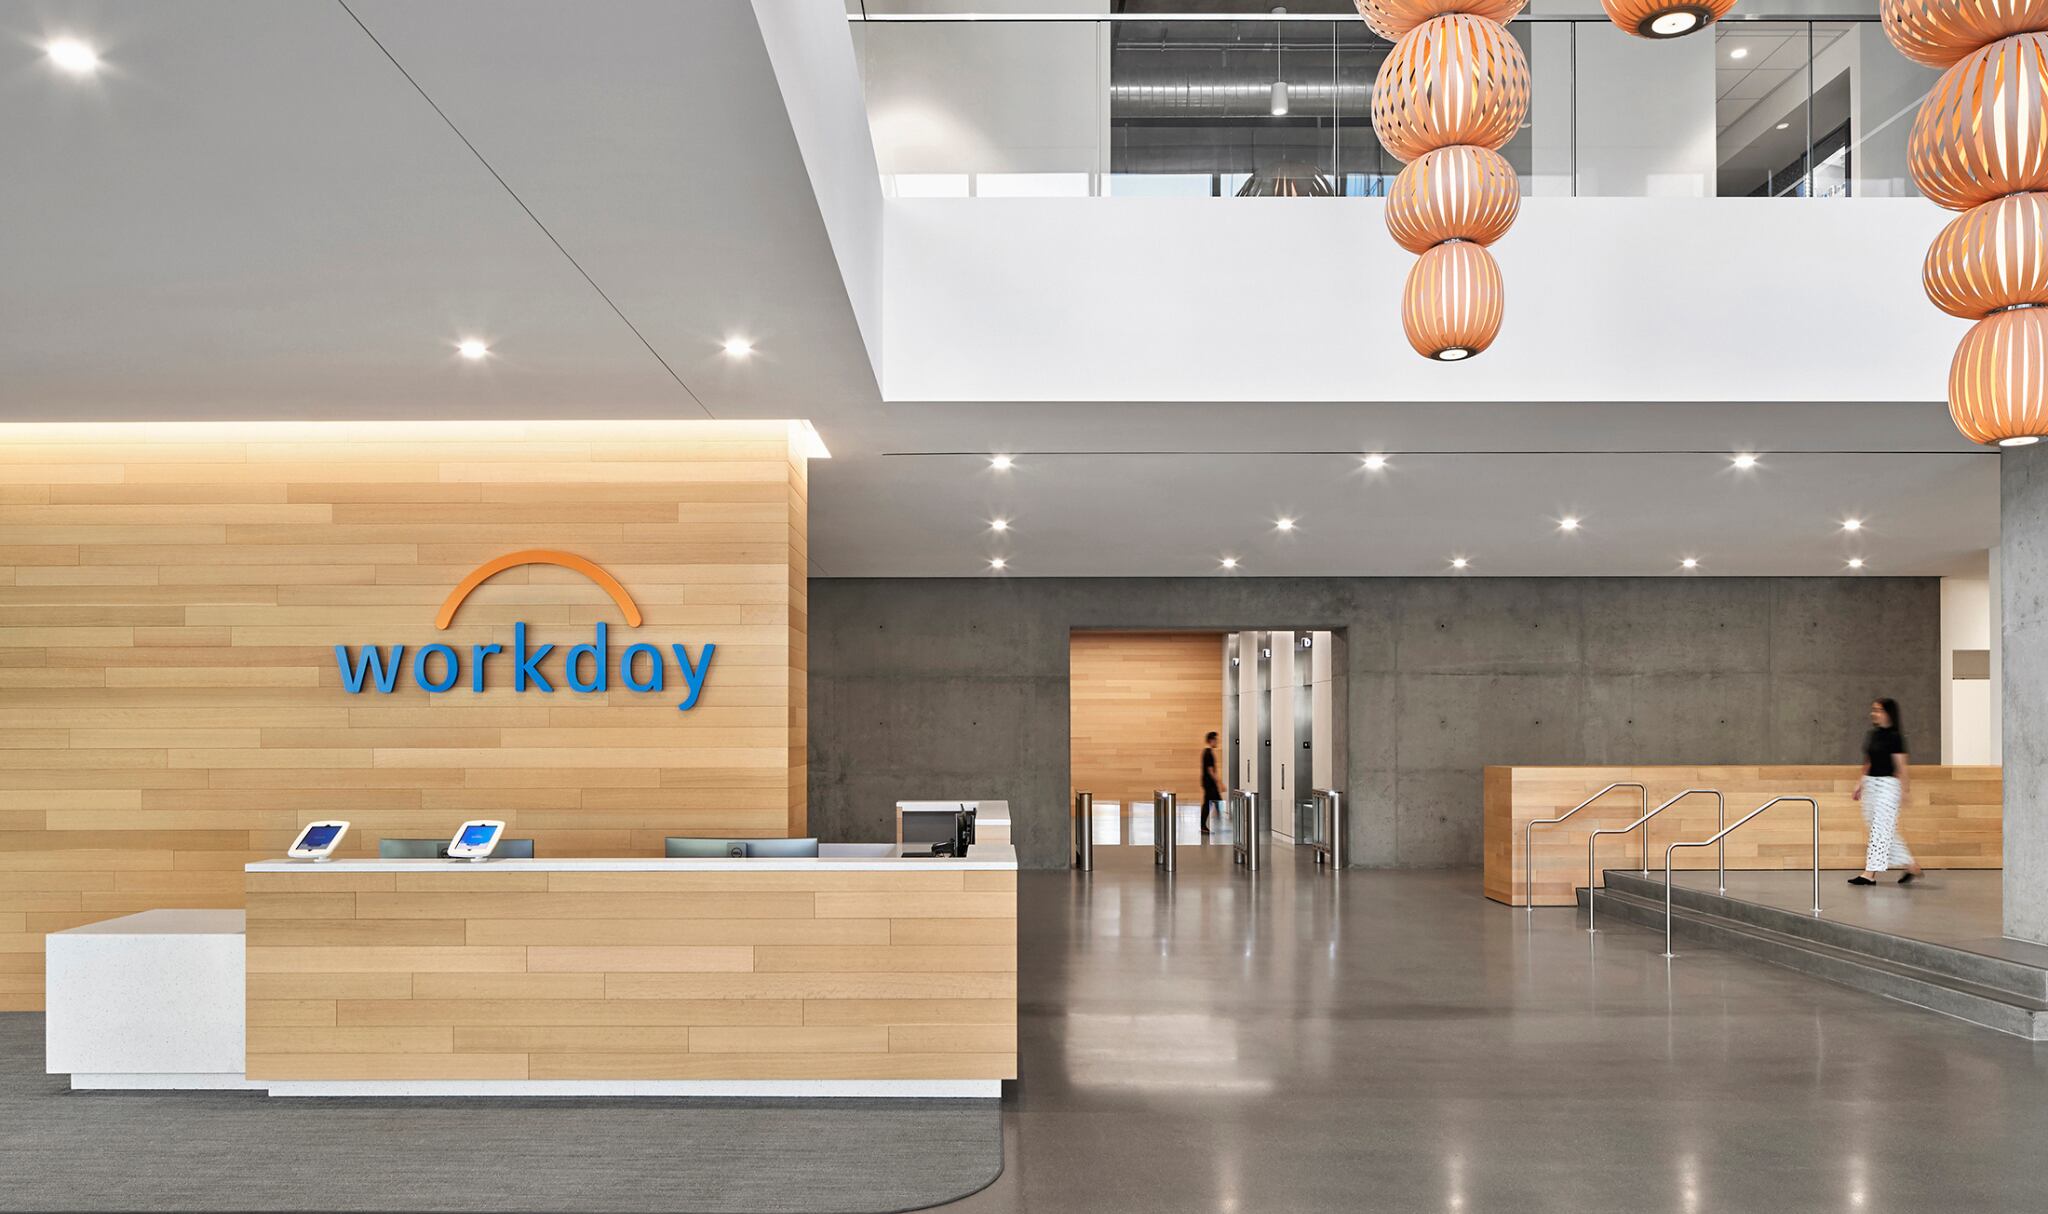 Workday instalará su centro de operaciones en Cariari de Heredia, concretamente en los espacios de oficinas de WeWork Cariari.  